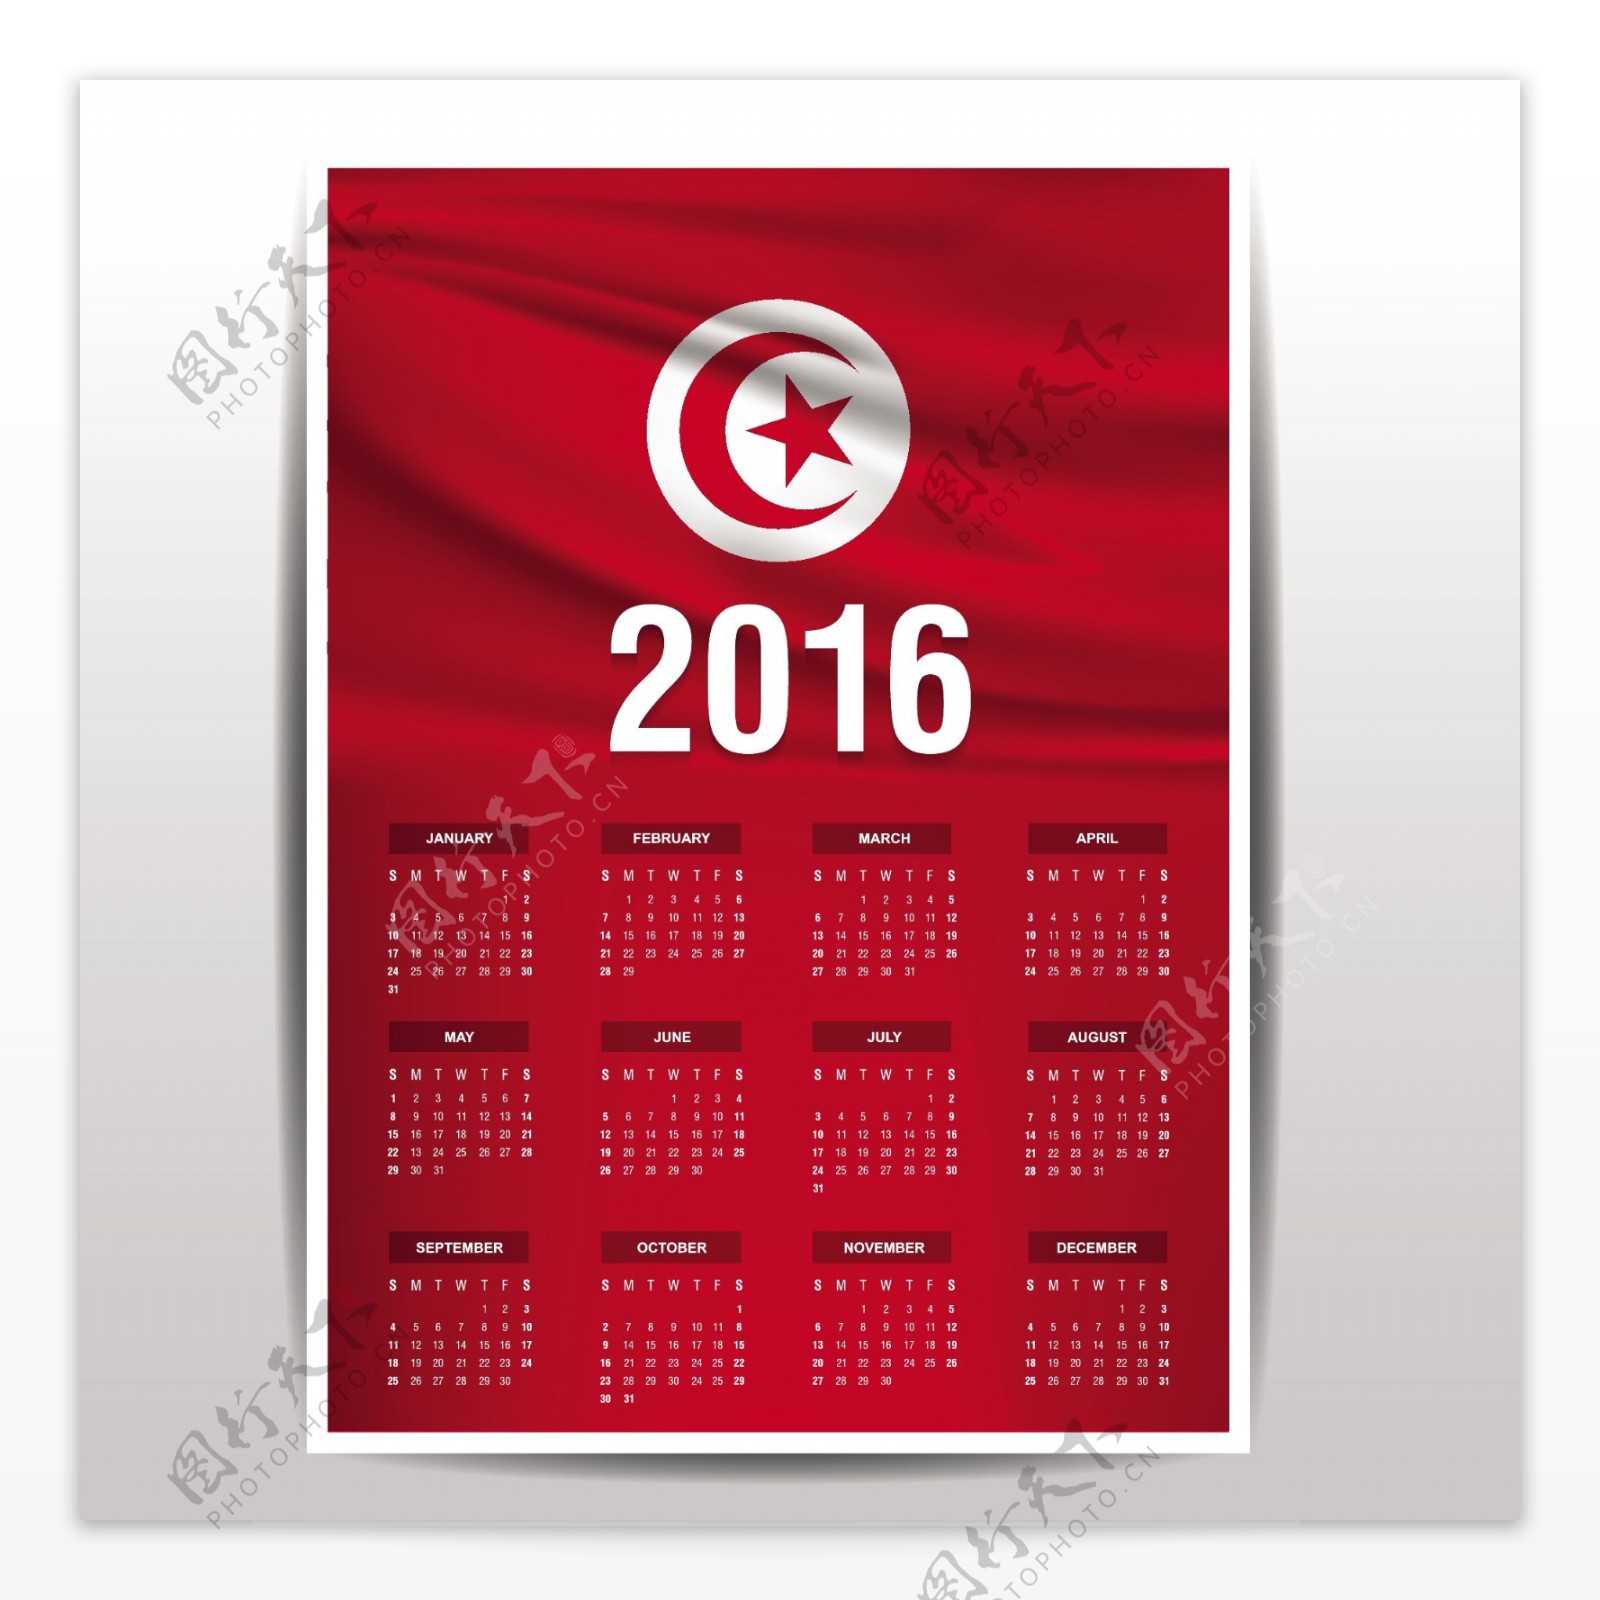 突尼斯日历2016